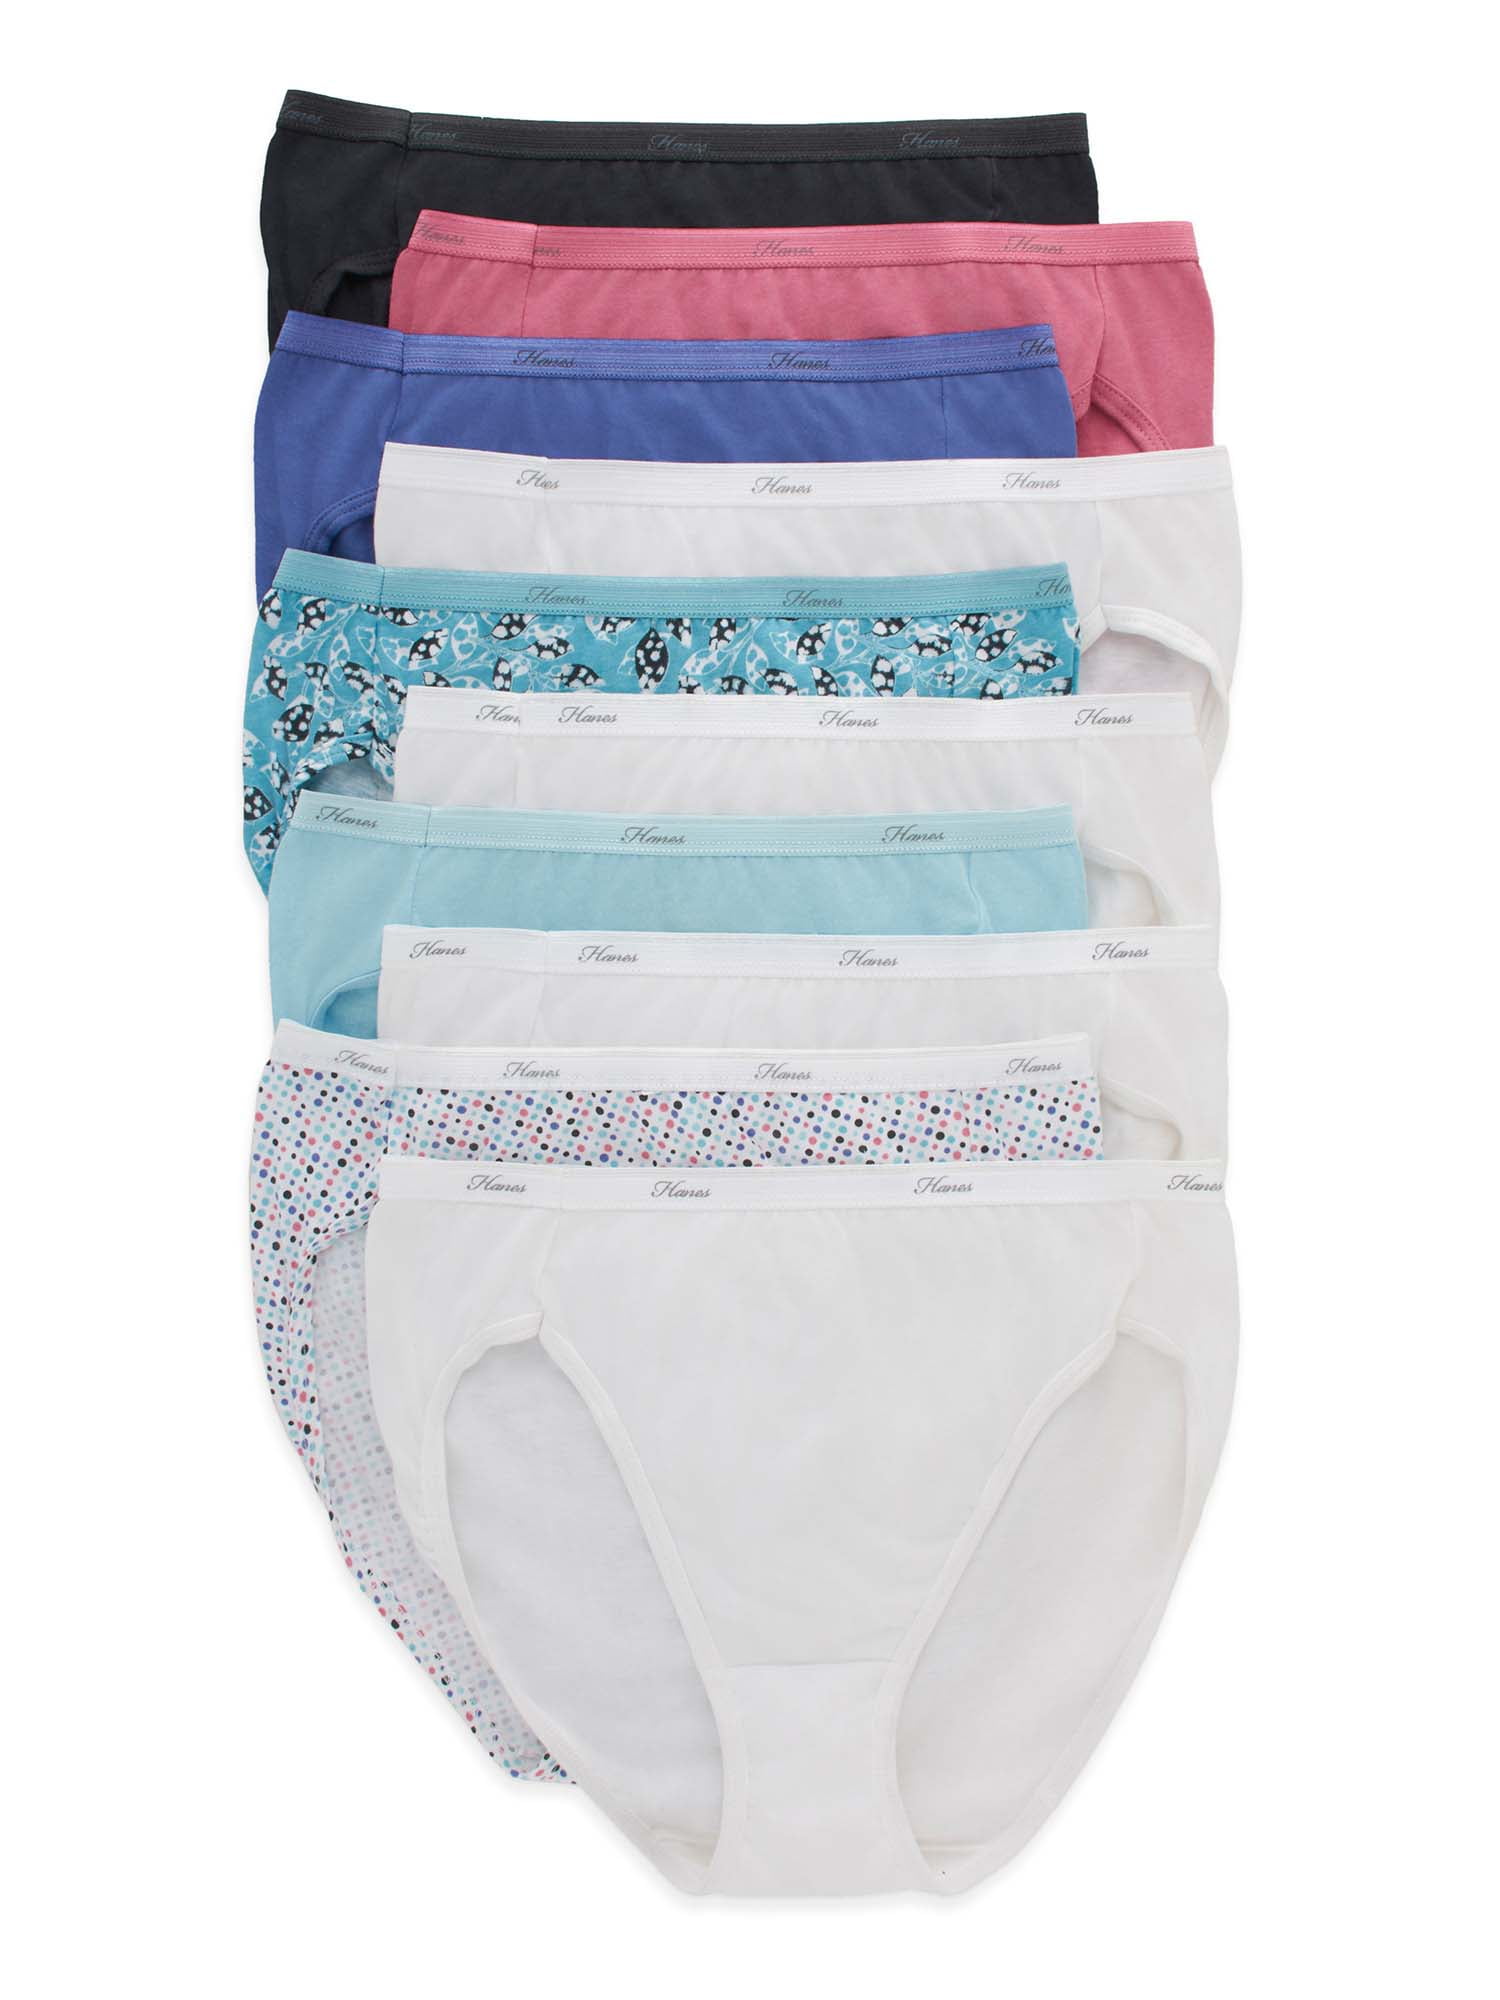 Hanes Women's Breathable Hi-Cut Cotton Underwear, 10-Pack, Sizes 6